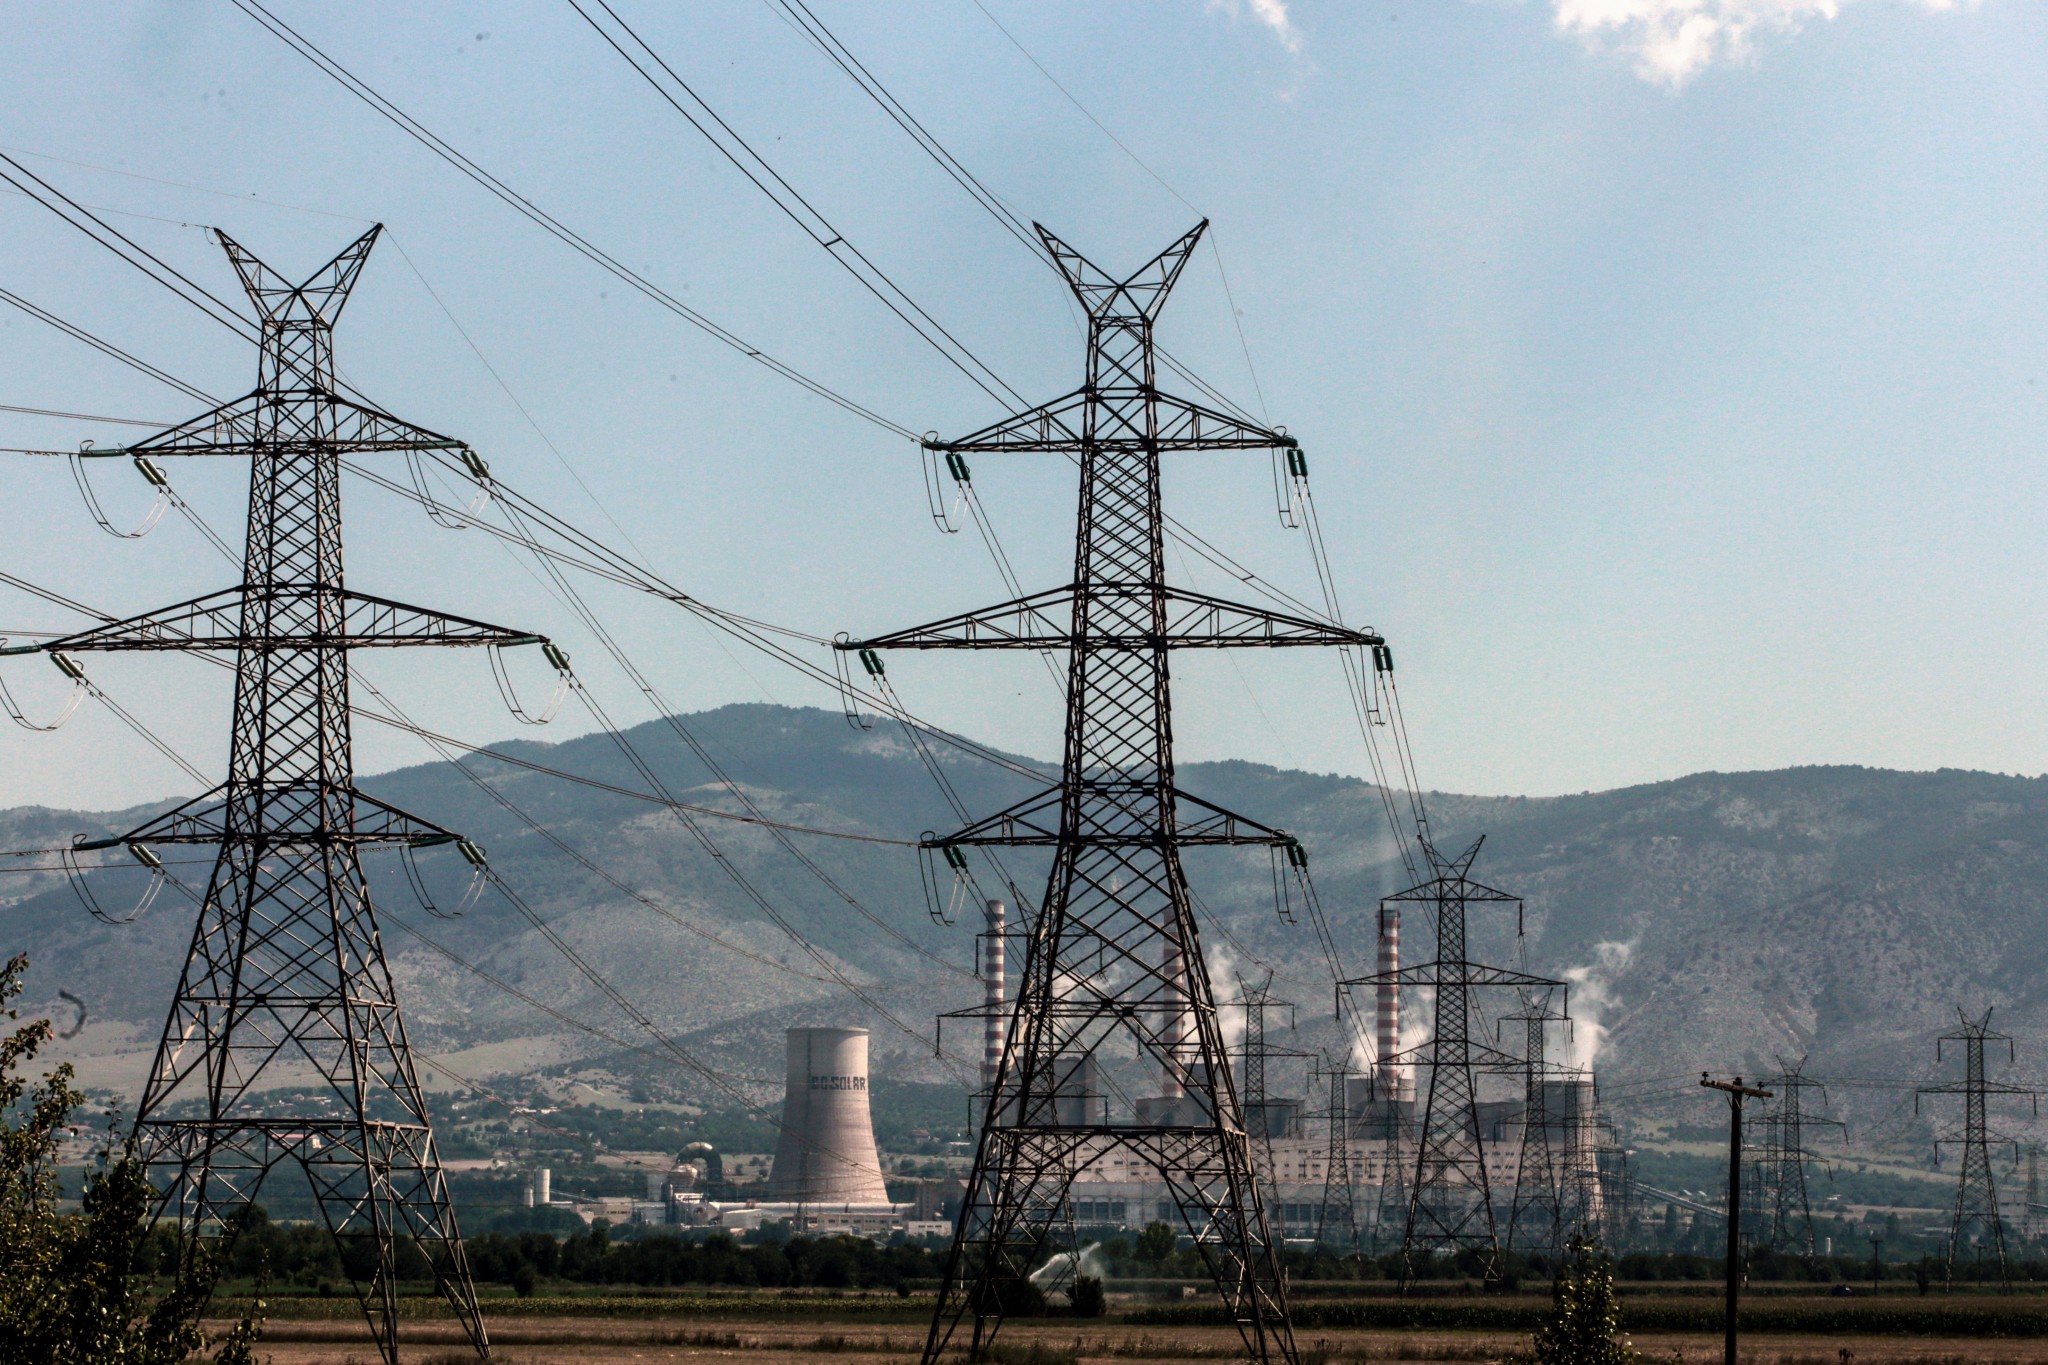 Κομισιόν: Έγκριση αποζημίωσης €1,36 δισ. στις ενεργοβόρες επιχειρήσεις για την αύξηση των τιμών ηλεκτρικής ενέργειας